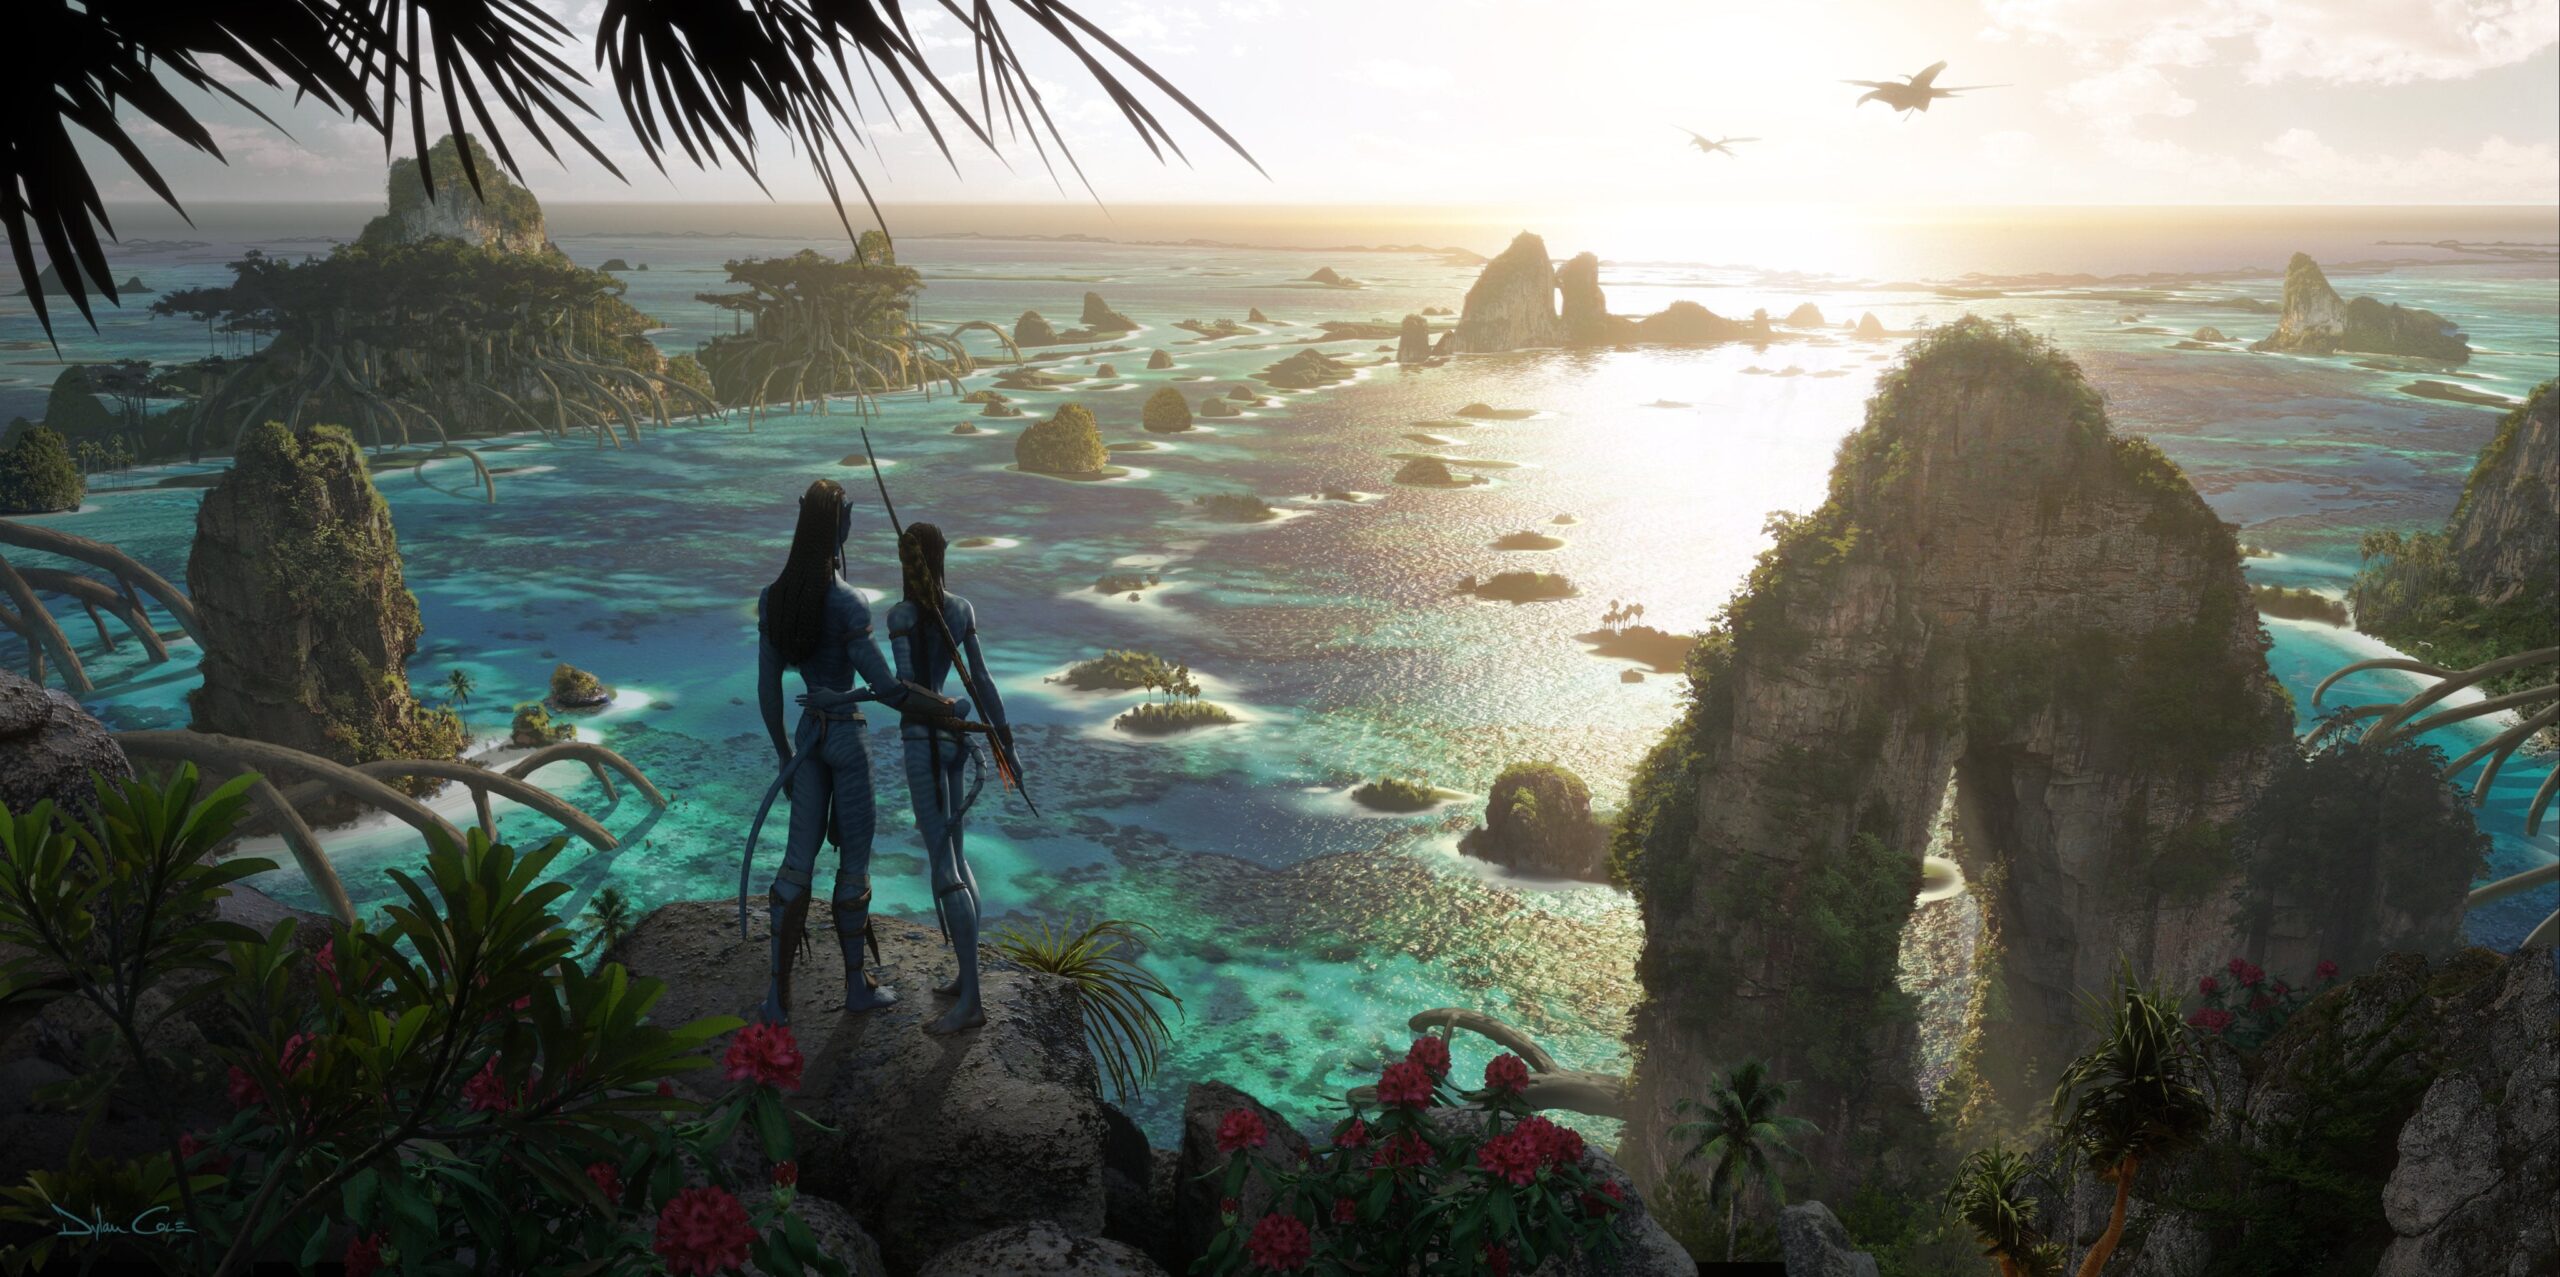 Cena do filme Avatar. Na imagem, aparecem dois habitantes de Pandora, planeta pertencente ao universo de Avatar. Neytiri e Jake Sully, dois Na'Vi, estão de pé observando o oceano de Pandora, local de águas cristalinas, rodeado de uma vegetação bastante verde e algumas poucas flores. Existem vários rochedos espelhados pela área.